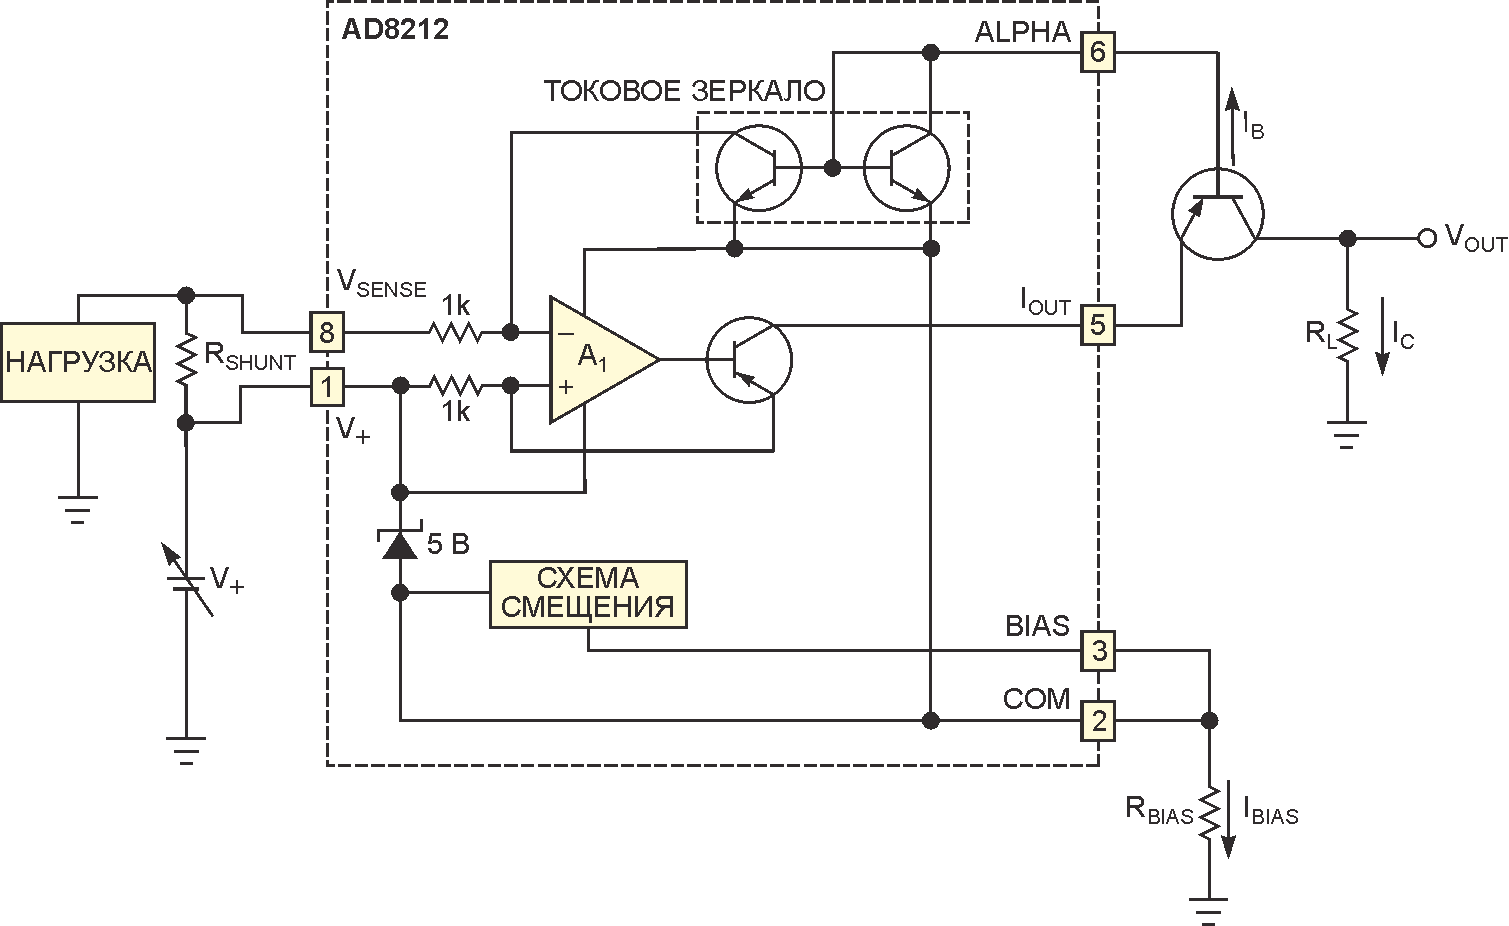 Внешний PNP транзистор позволяет схеме работать при высоких напряжениях.